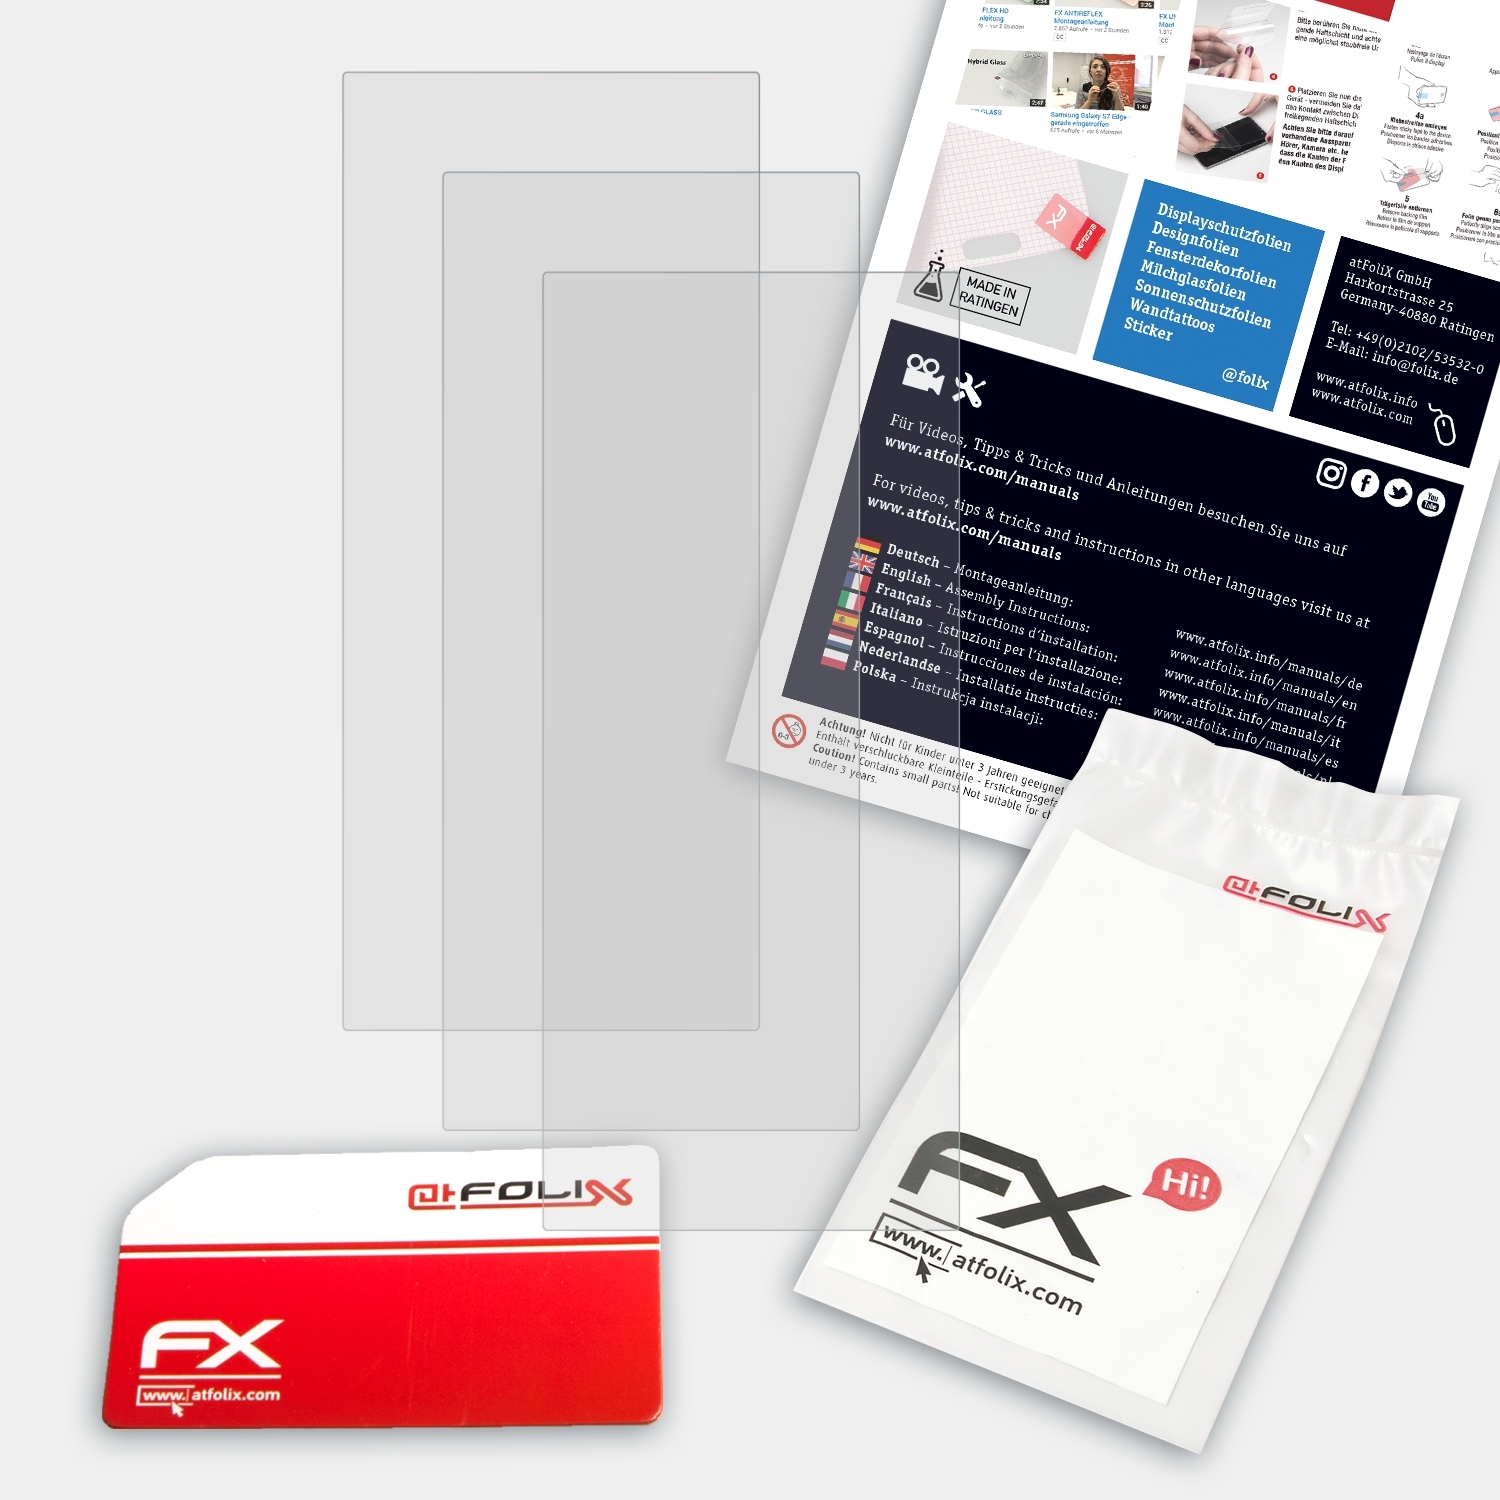 3x FX-Antireflex Approach Displayschutz(für Garmin ATFOLIX X10)